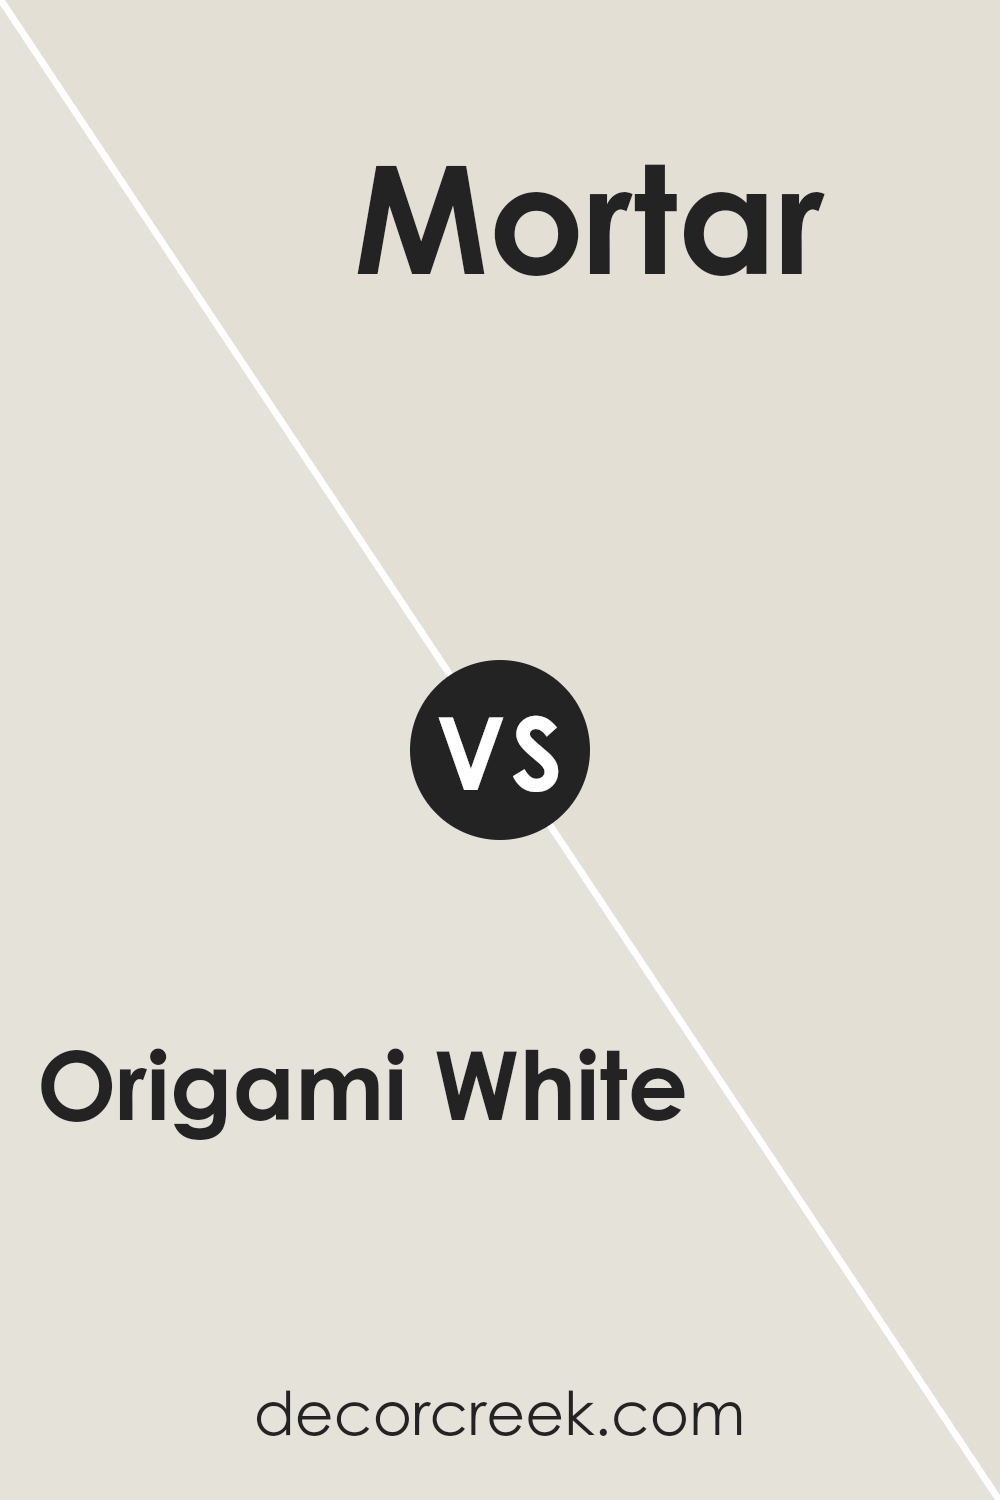 origami_white_sw_7636_vs_mortar_sw_9584